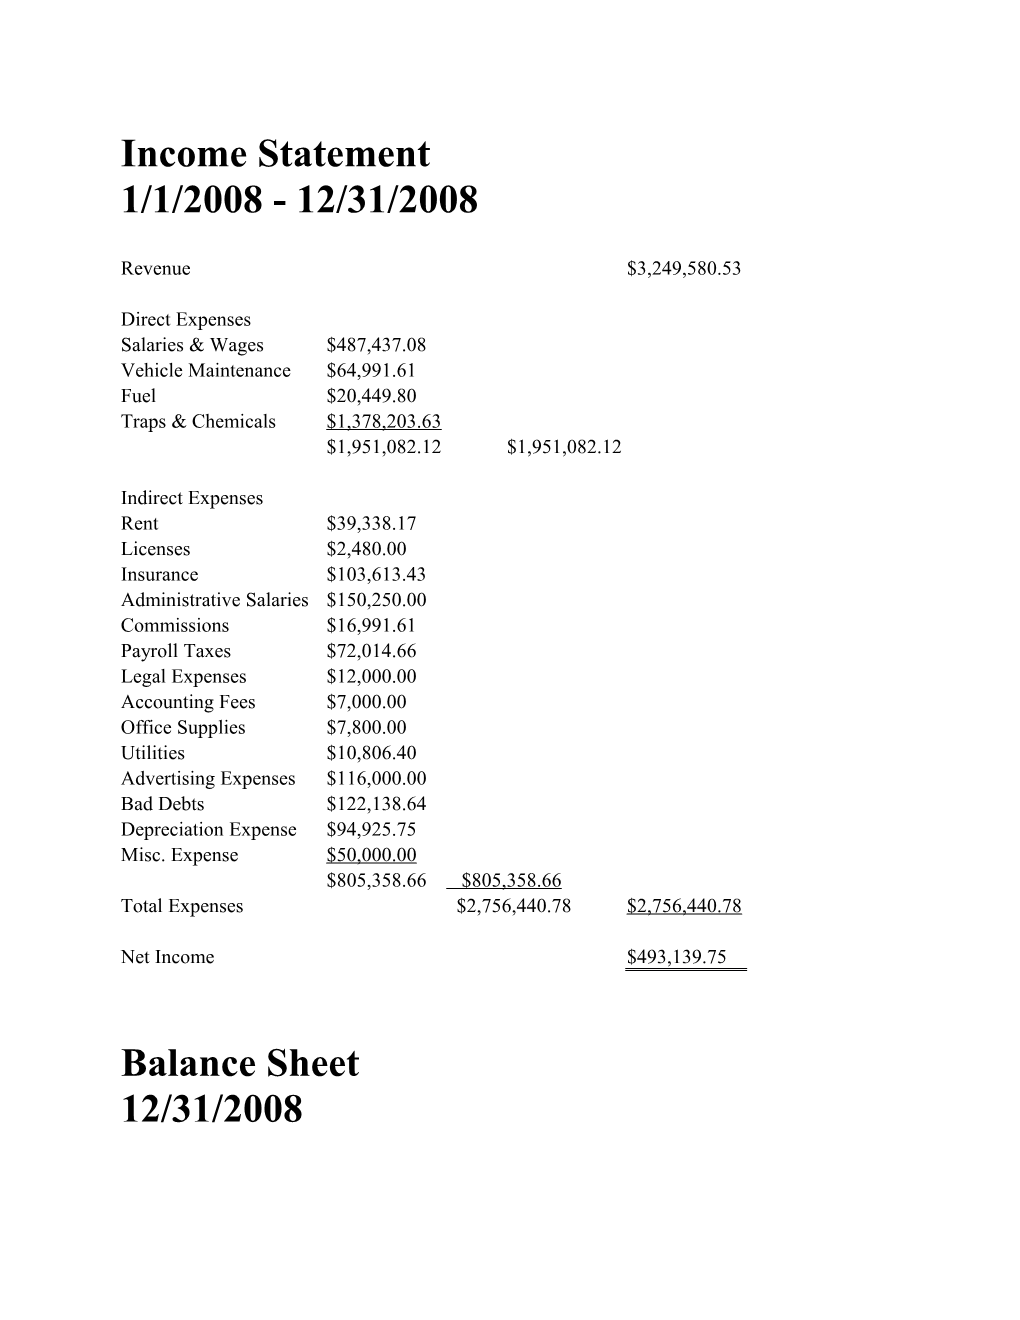 Income Statement 1/1/2008 - 12/31/2008